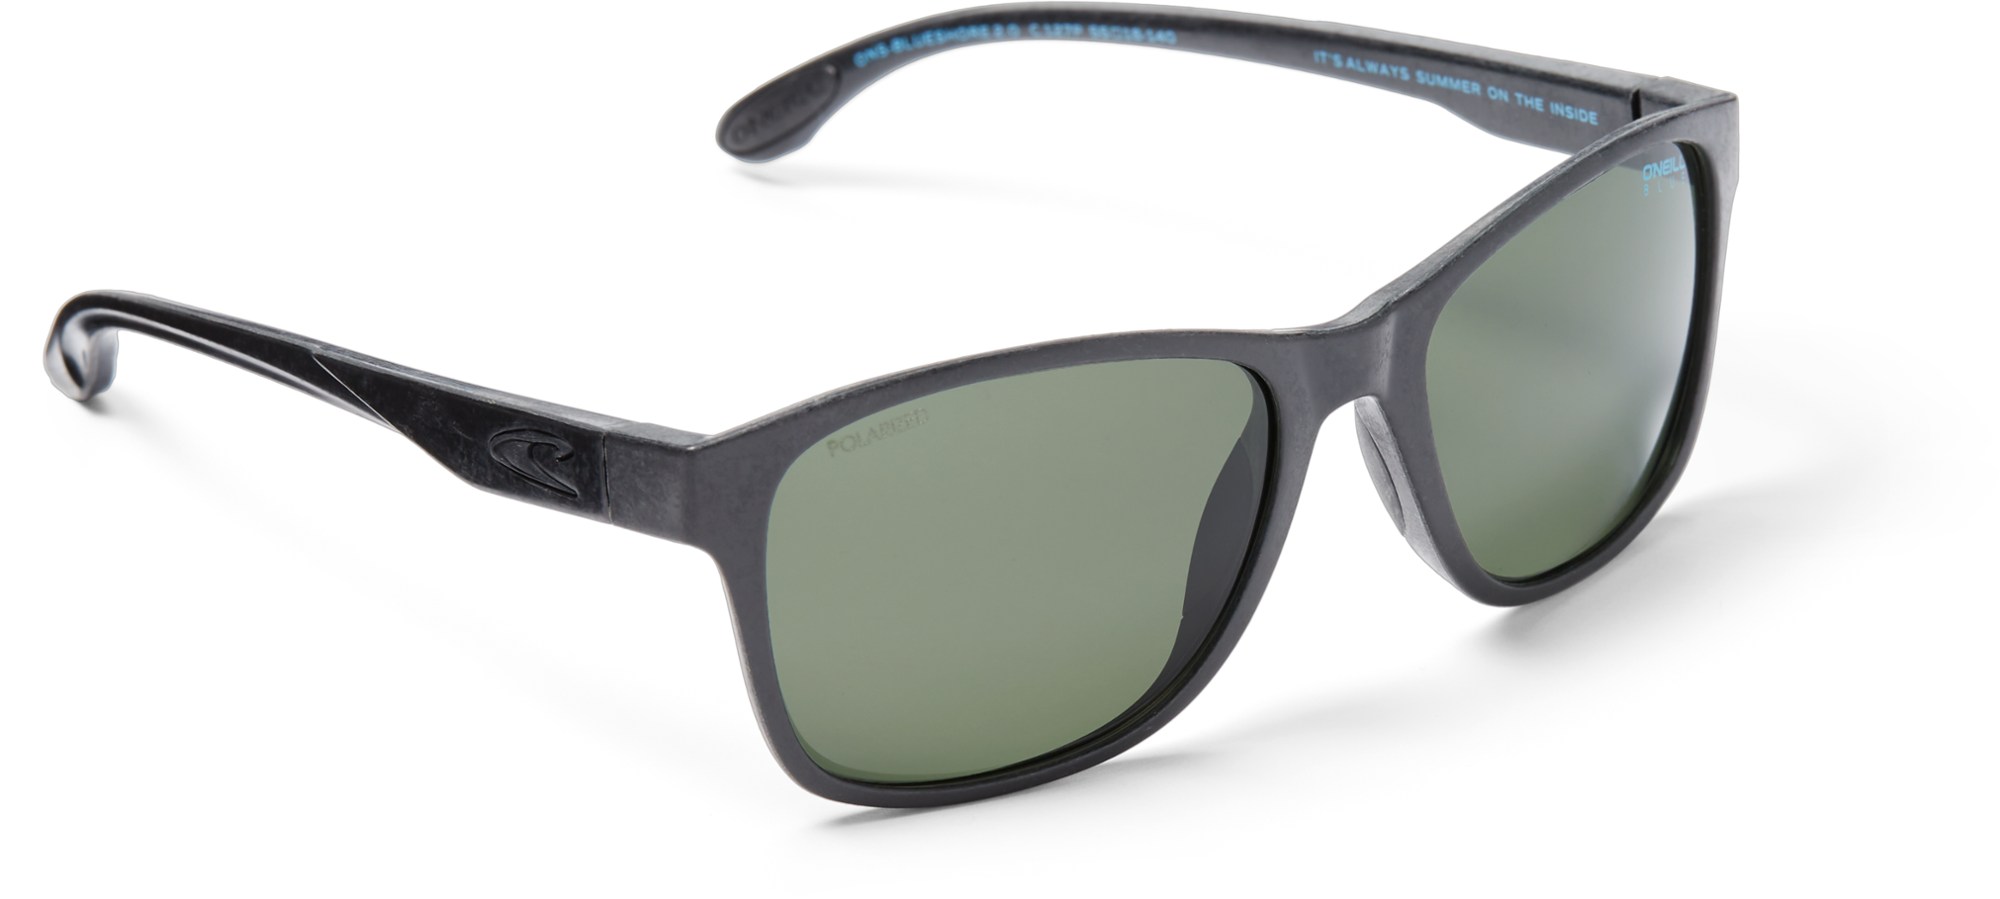 Поляризованные солнцезащитные очки Blueshore O'NEILL Sunglasses, черный фотографии